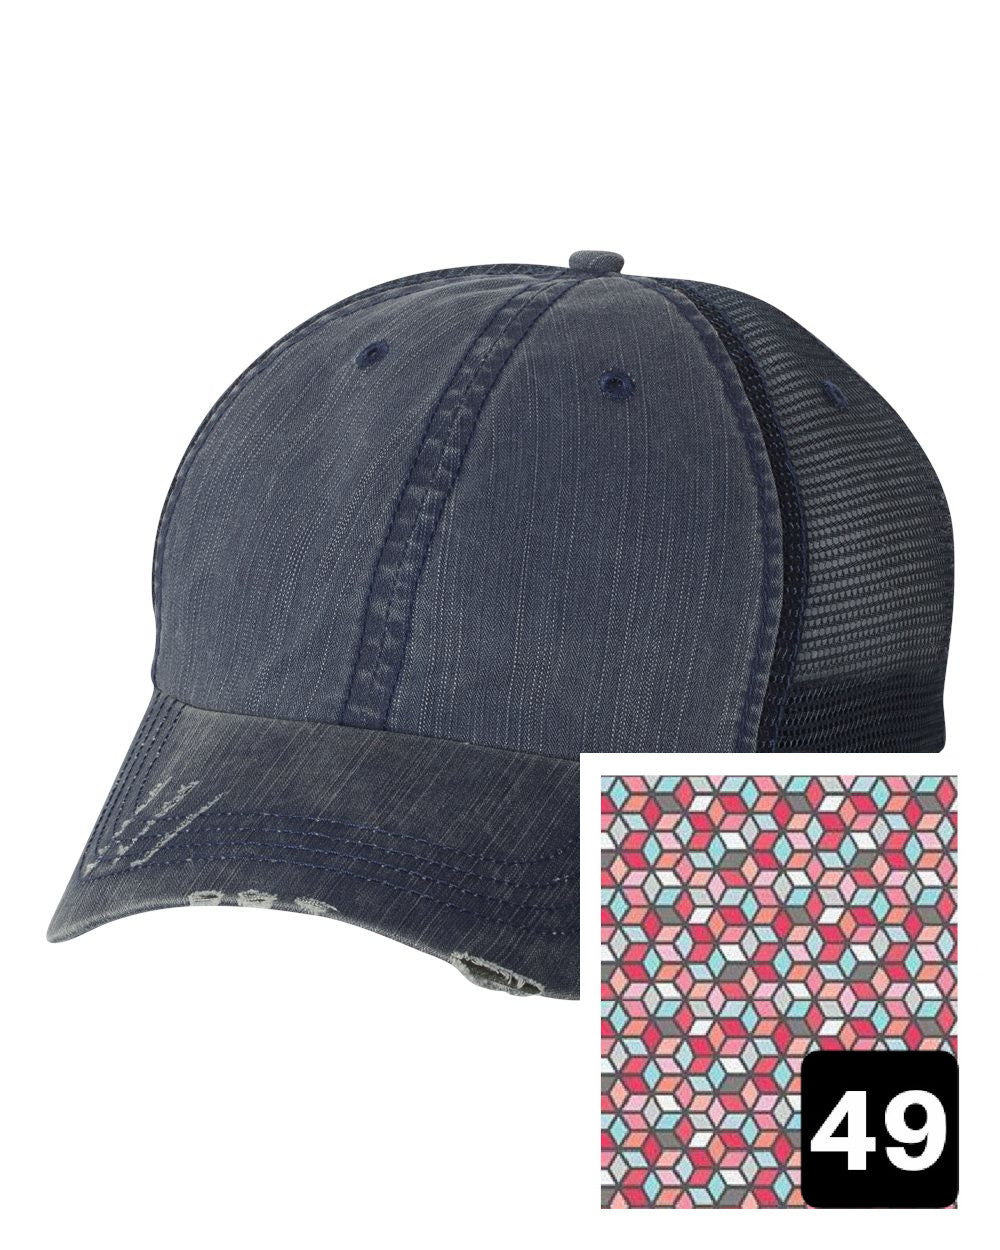 Oklahoma Hat | Navy Distressed Trucker Cap | Many Fabric Choices